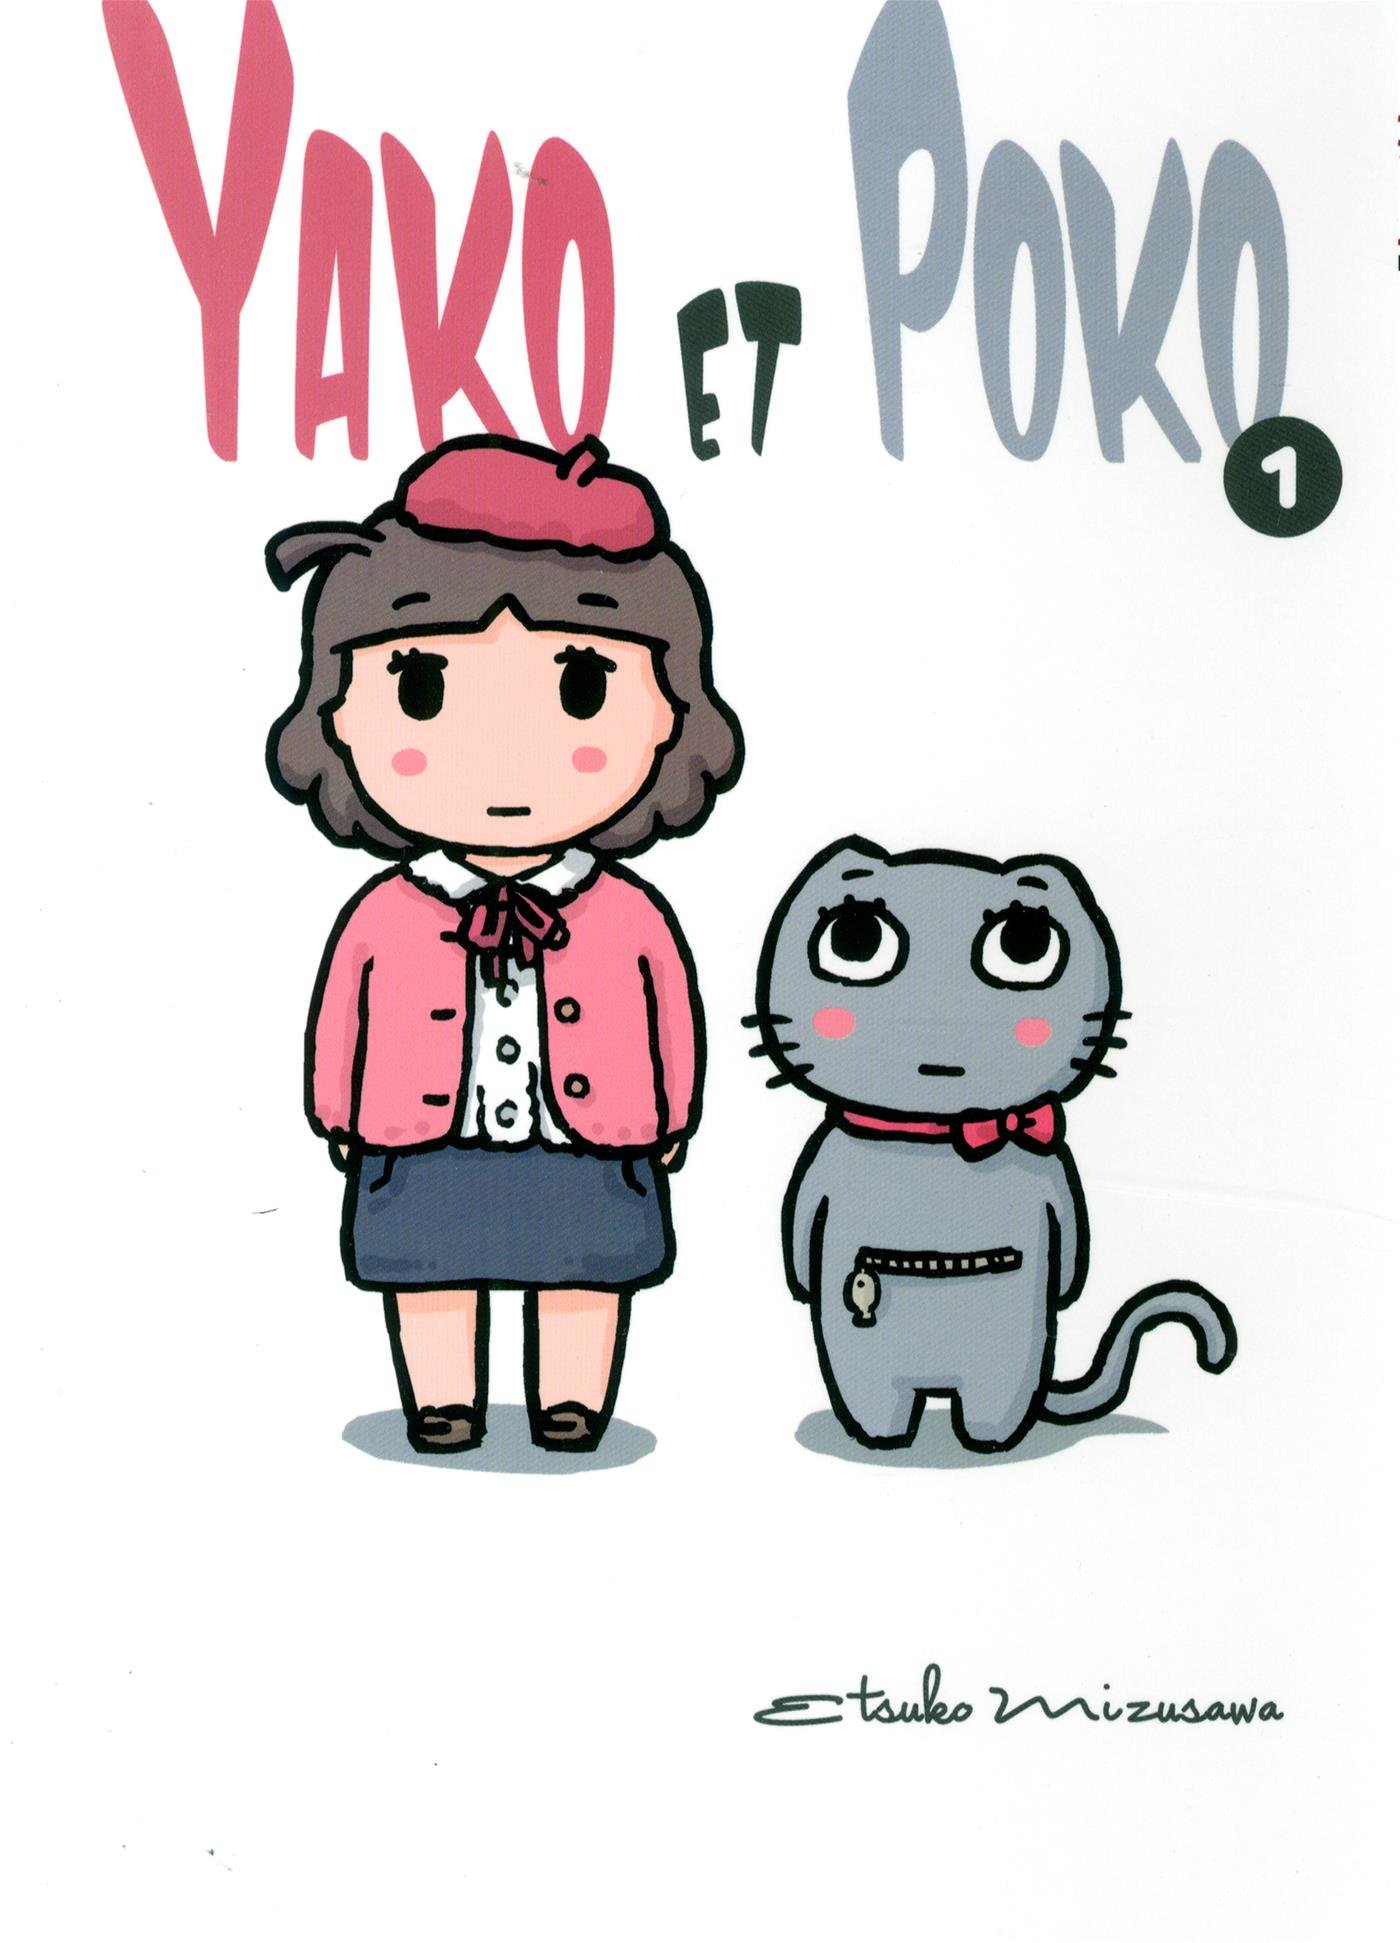 Yako et Poko